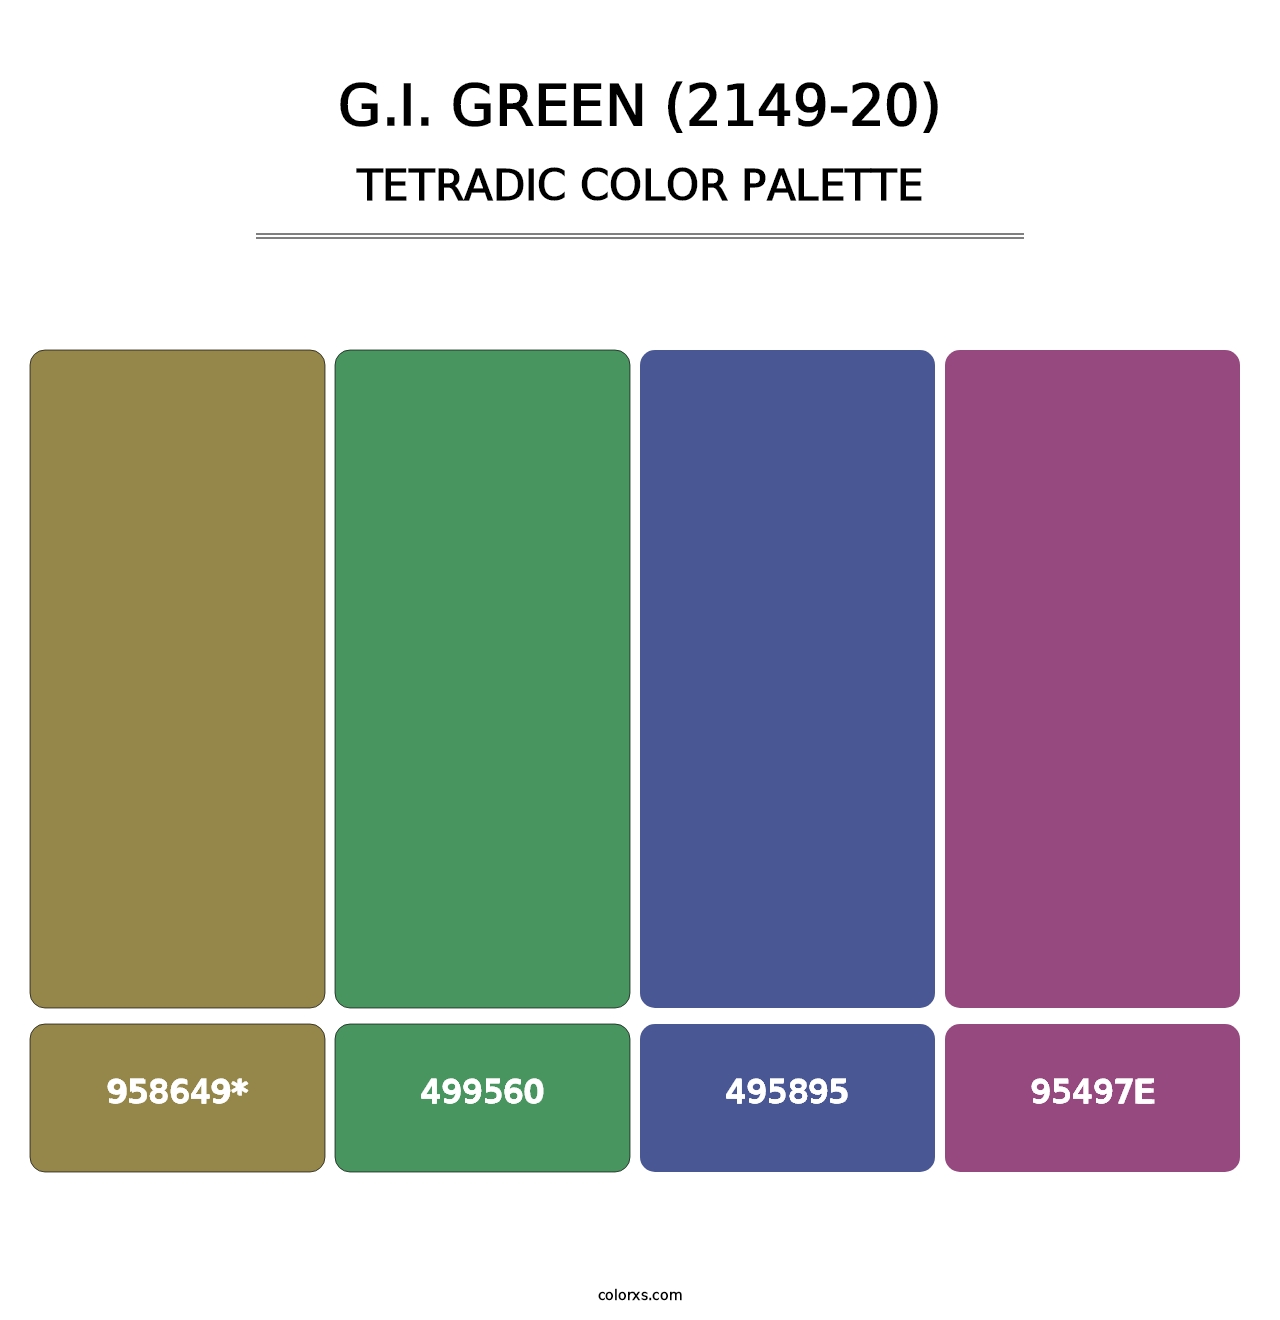 G.I. Green (2149-20) - Tetradic Color Palette